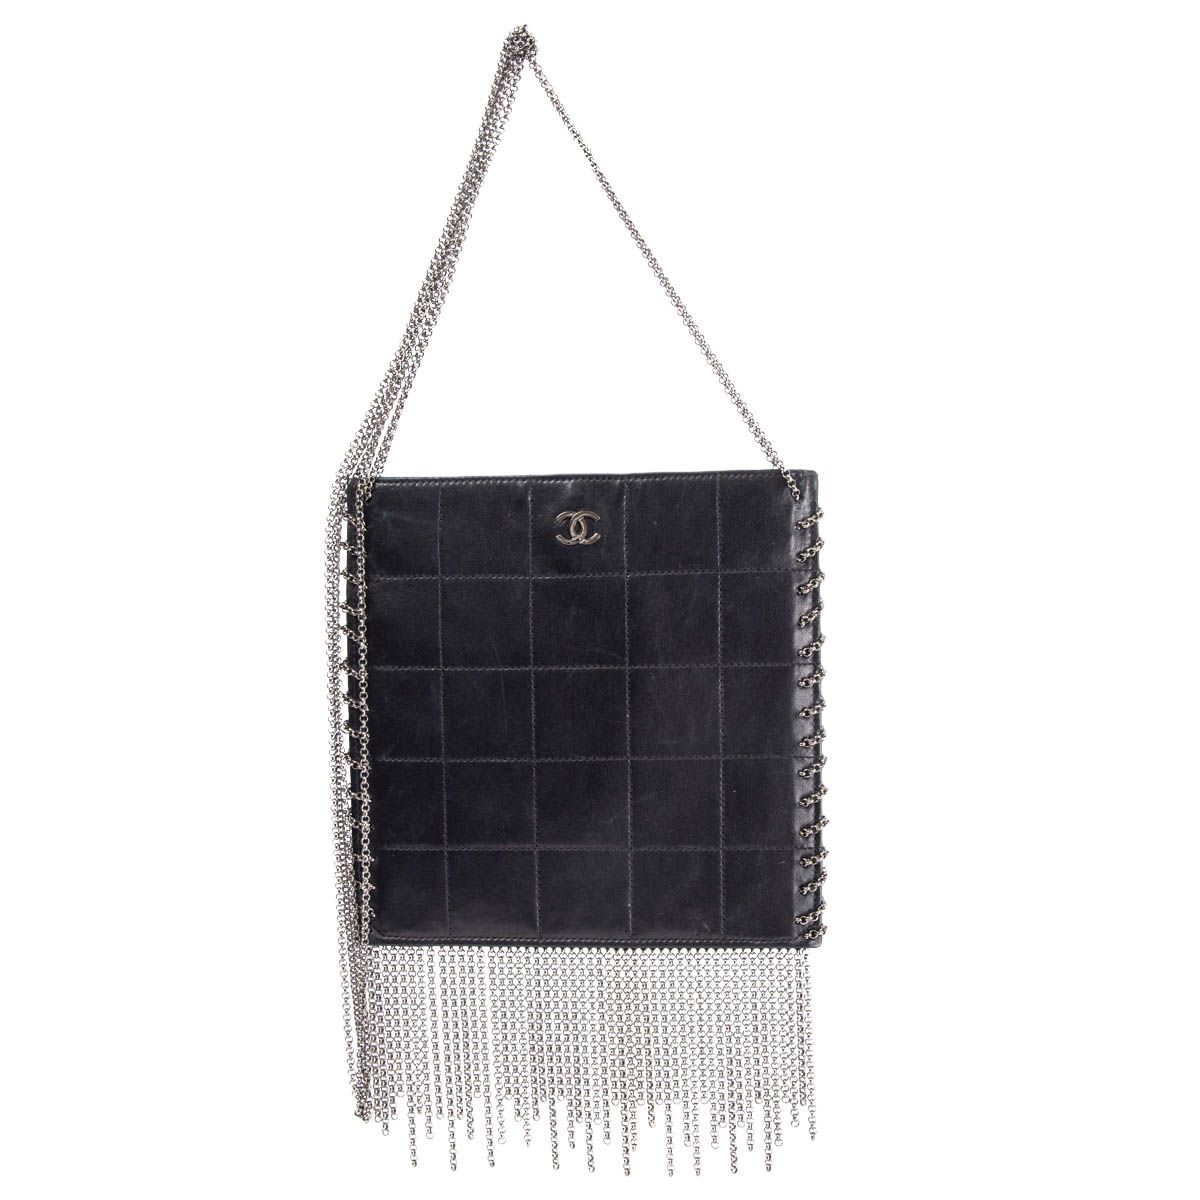 Chanel Quilted Chain Fringe Square Shoulder Bag Black Leather